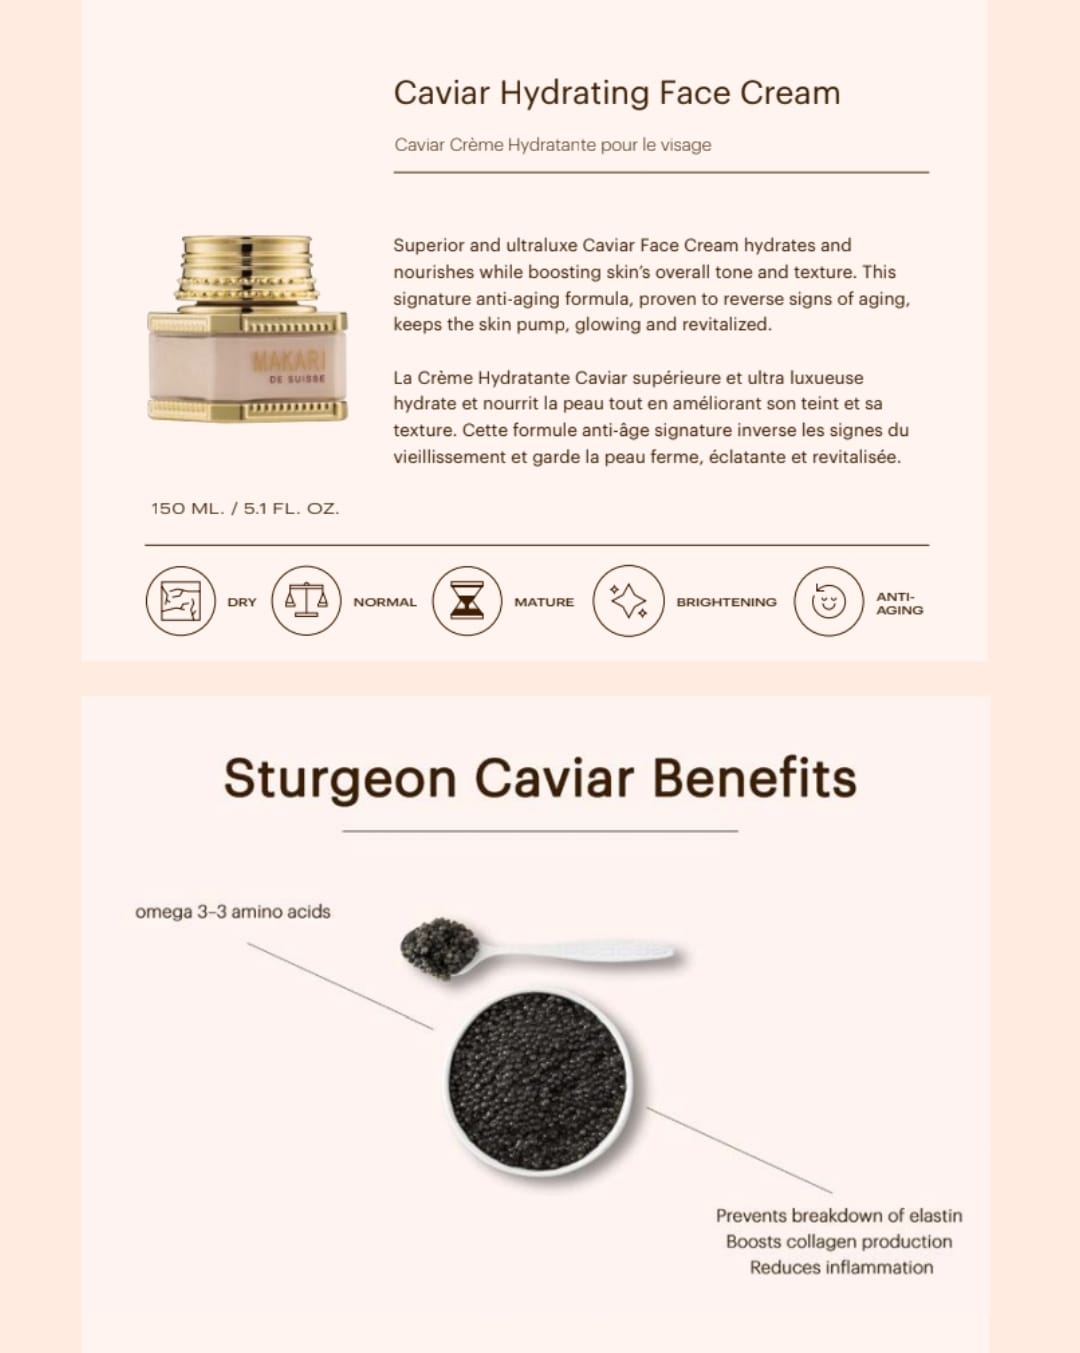 "MAKARI" Caviar Hydrating Face Cream